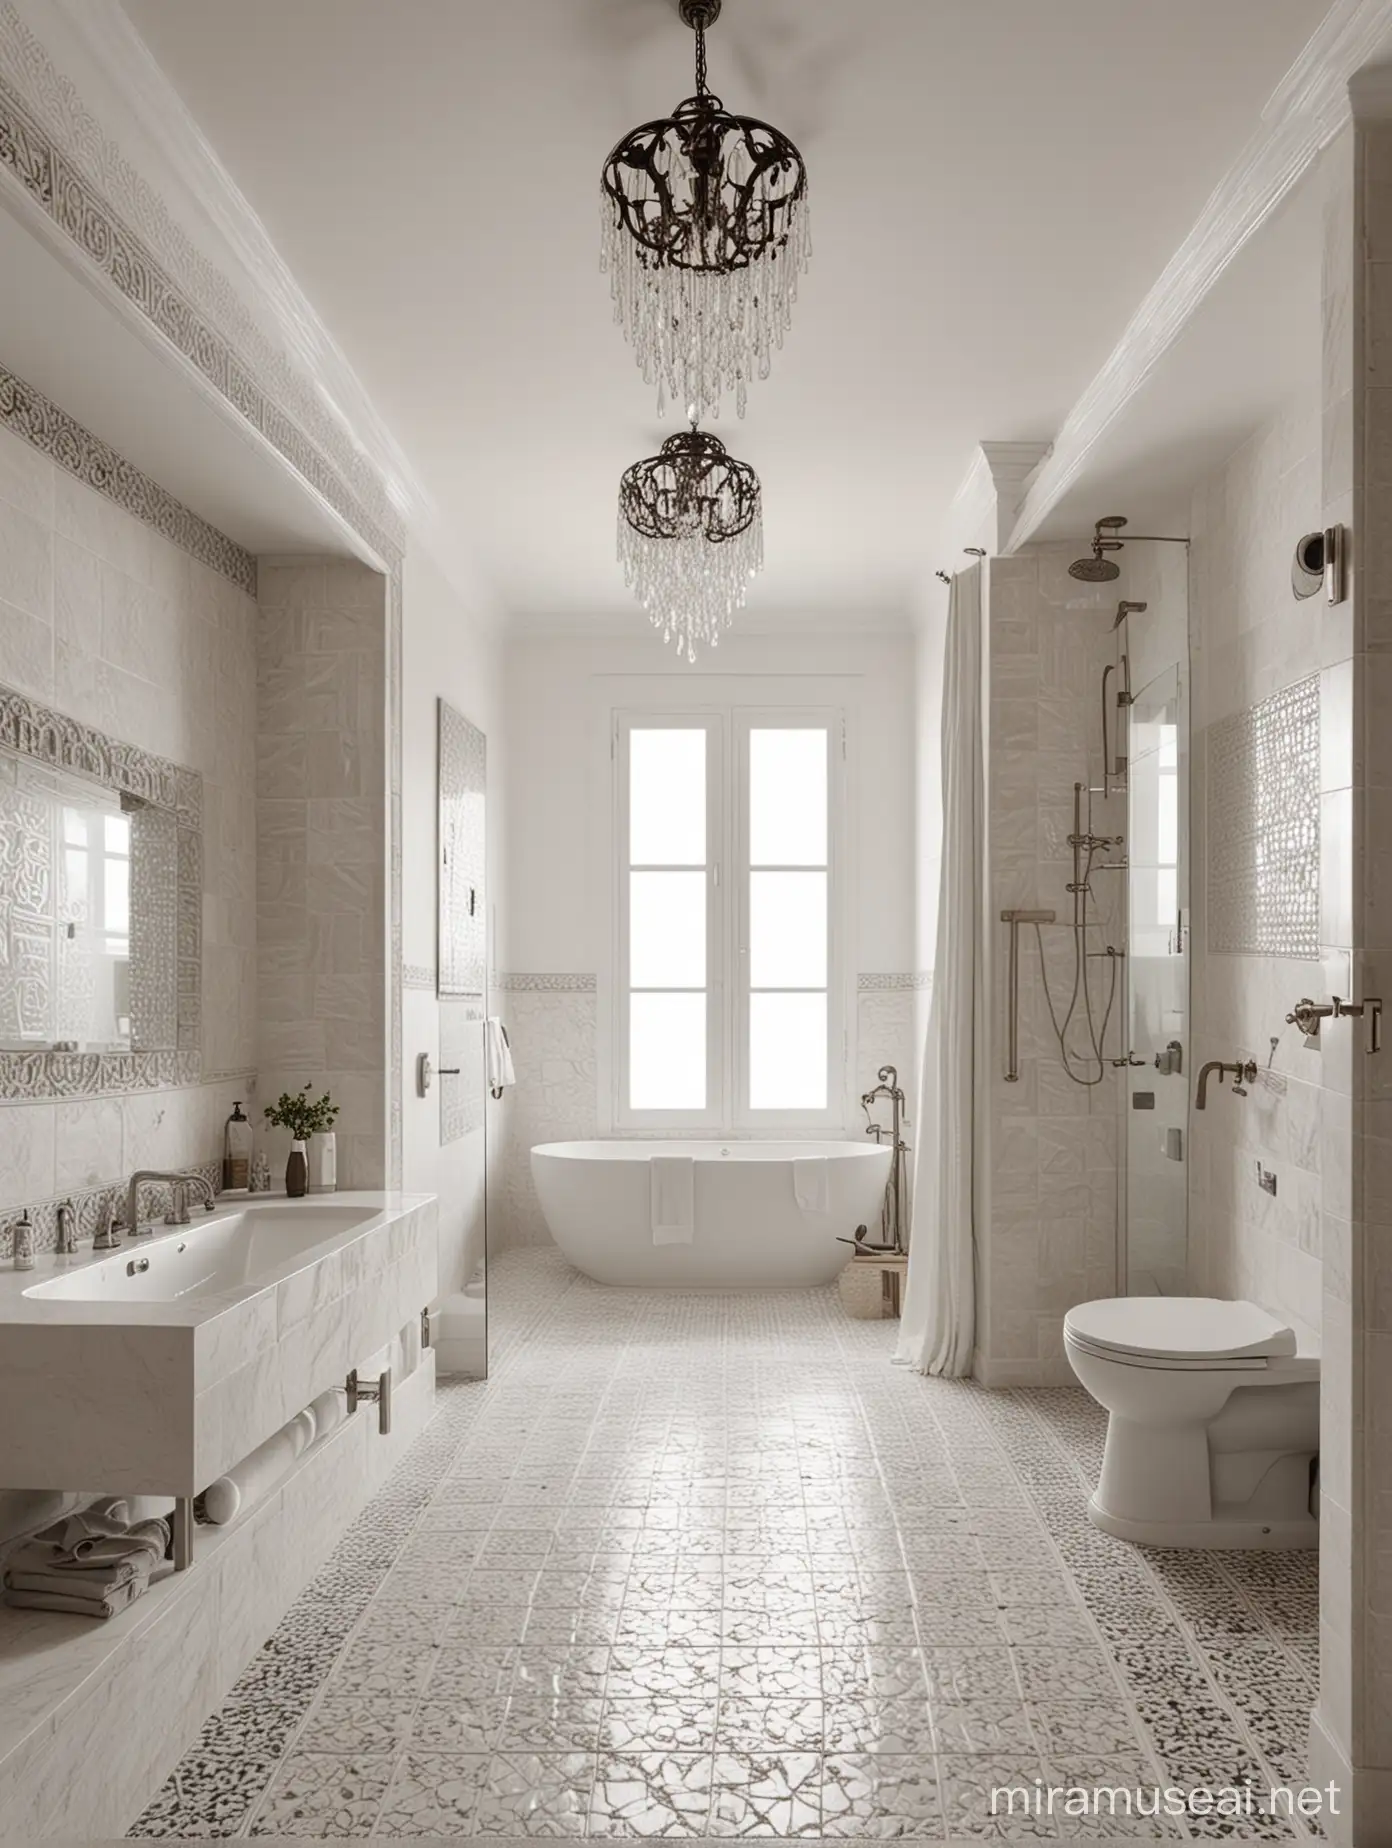 wygeneruj wizualizację dużej łazienki w stylu nowoczesnym minimalistycznym, w tradycyjnym domu w Andaluzji.  Na  jednej ścianie  renesansowy relief, na podłdzw azulejos. prysznic, 2 umywalki, lampa wiszaca  - żyrandol kryształowy